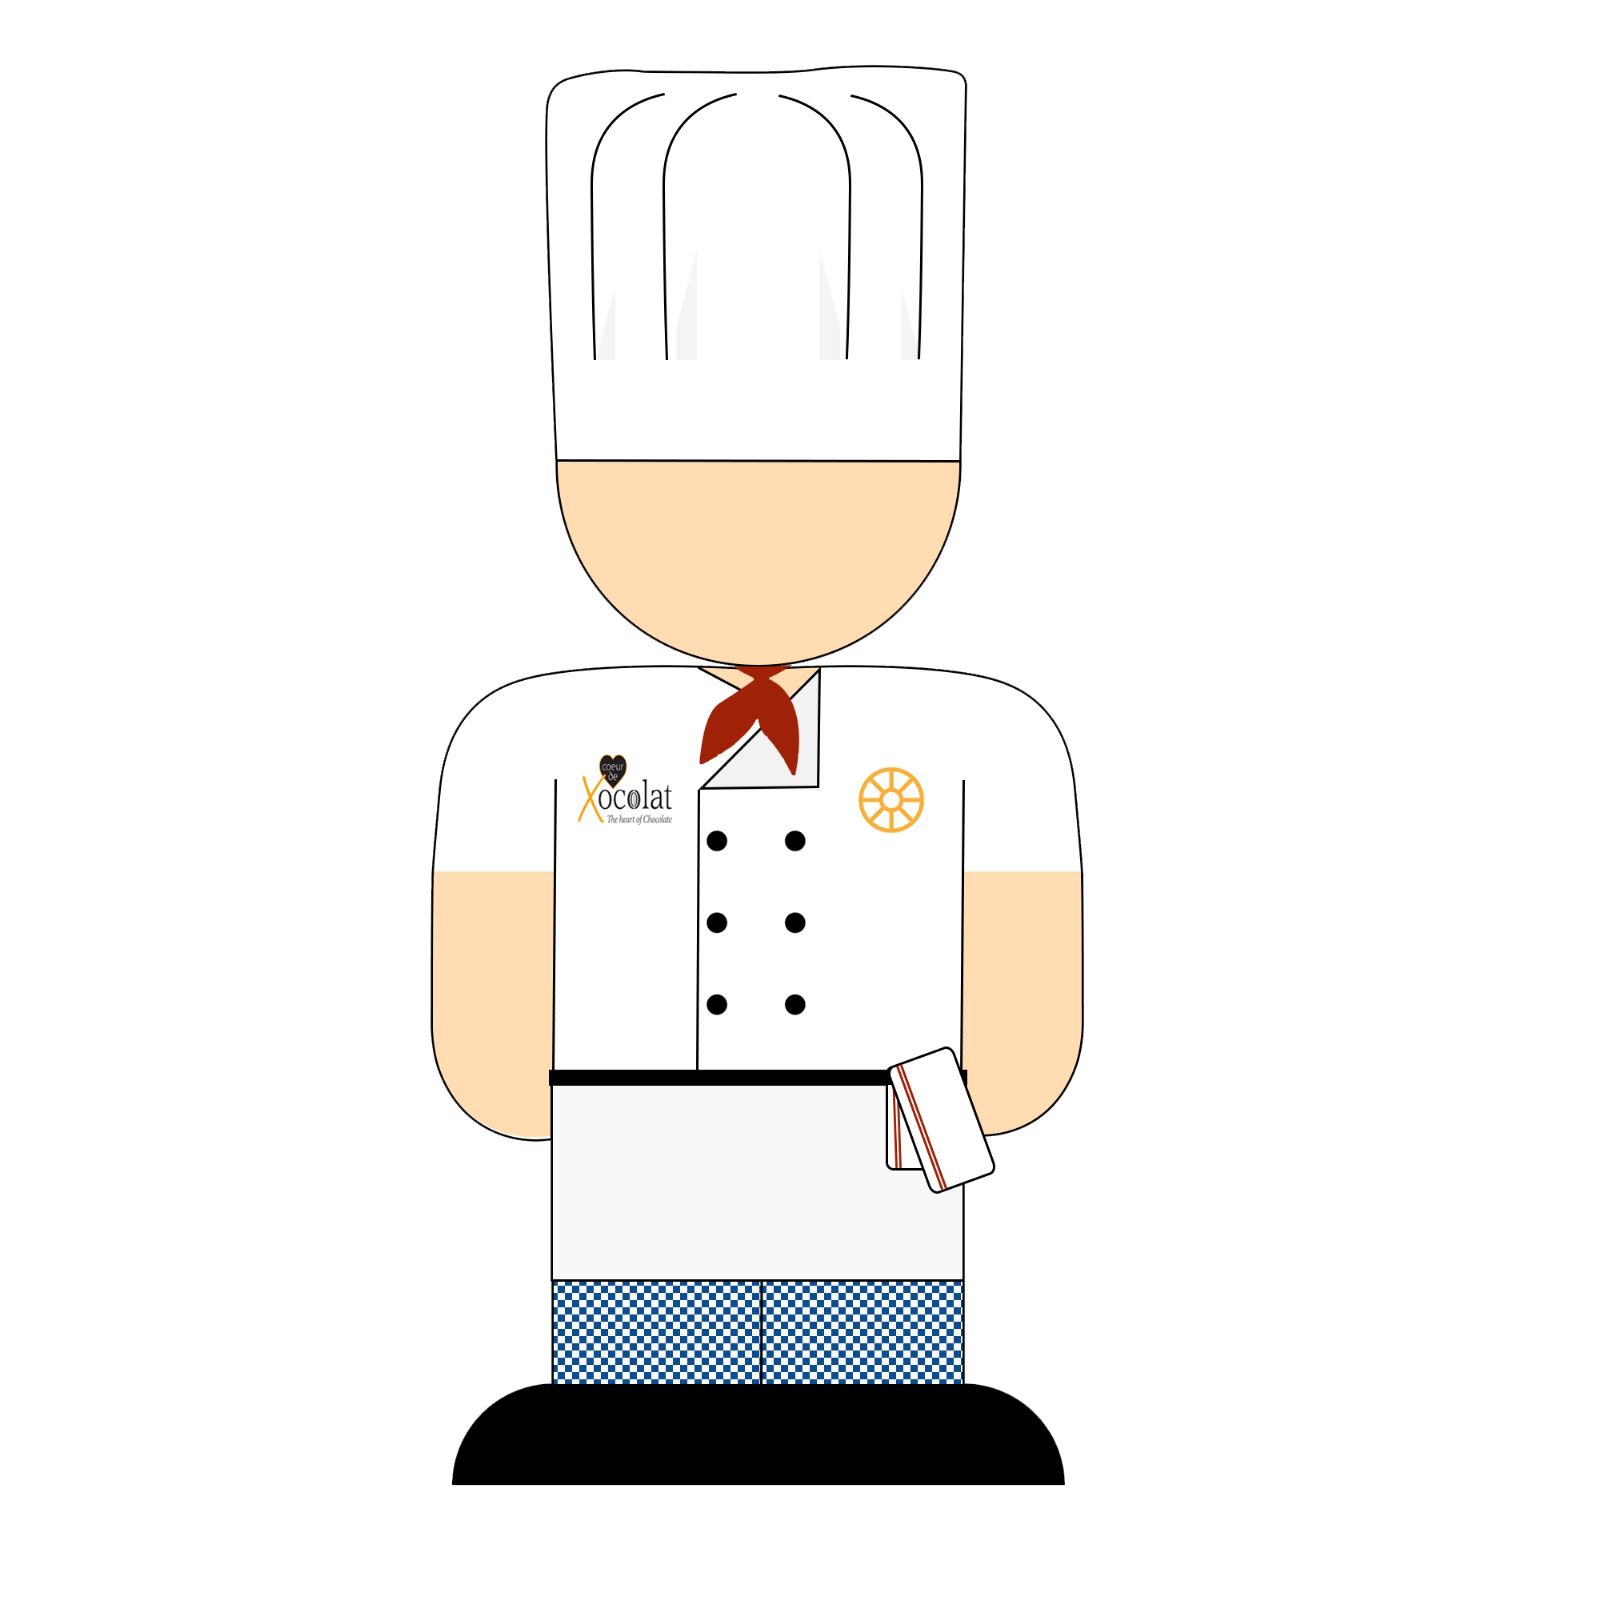 Why Do Chefs Wear White?